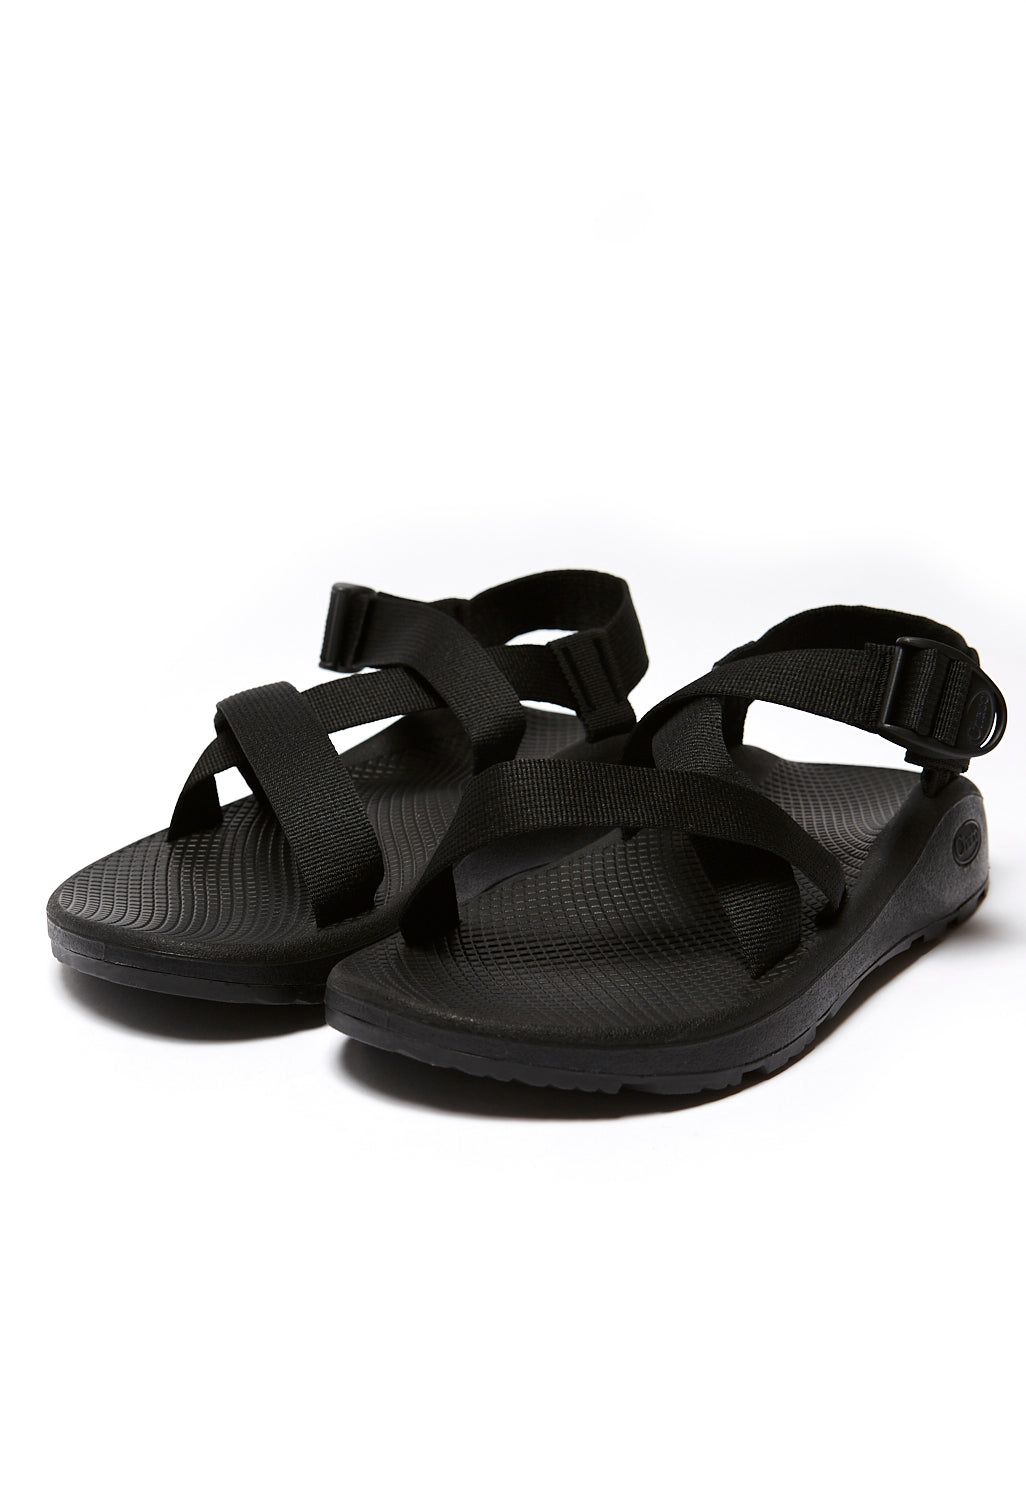 Chaco Men's Z Cloud Sandals - Solid Black